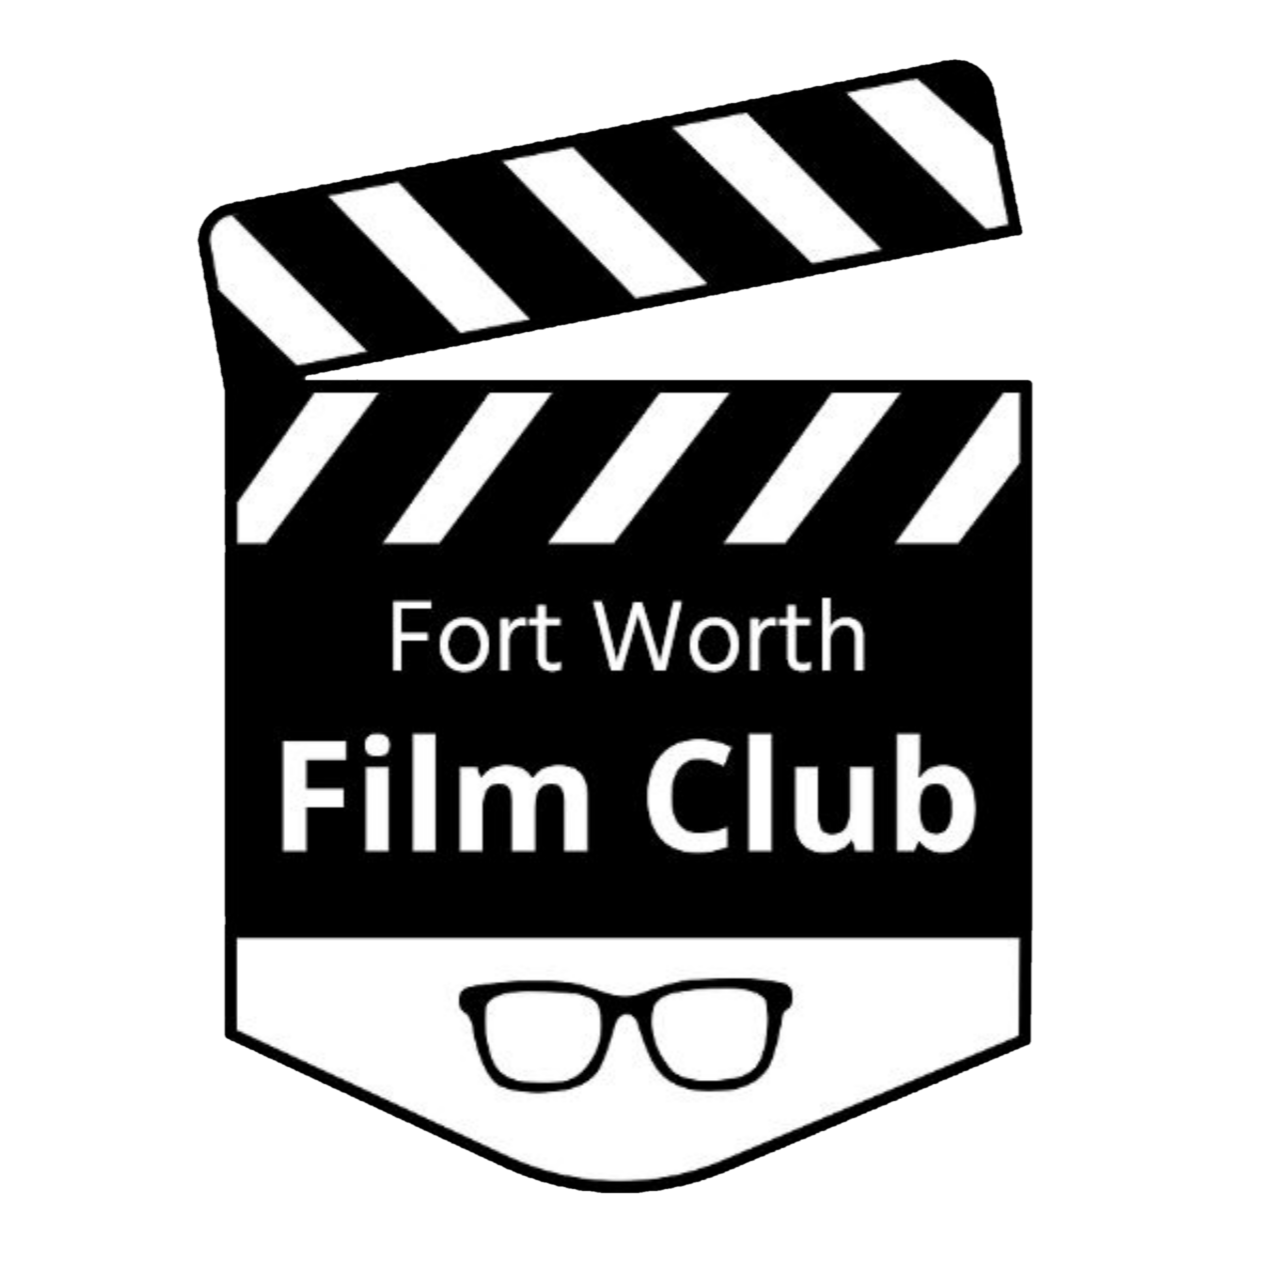 Artwork for Fort Worth Film Club